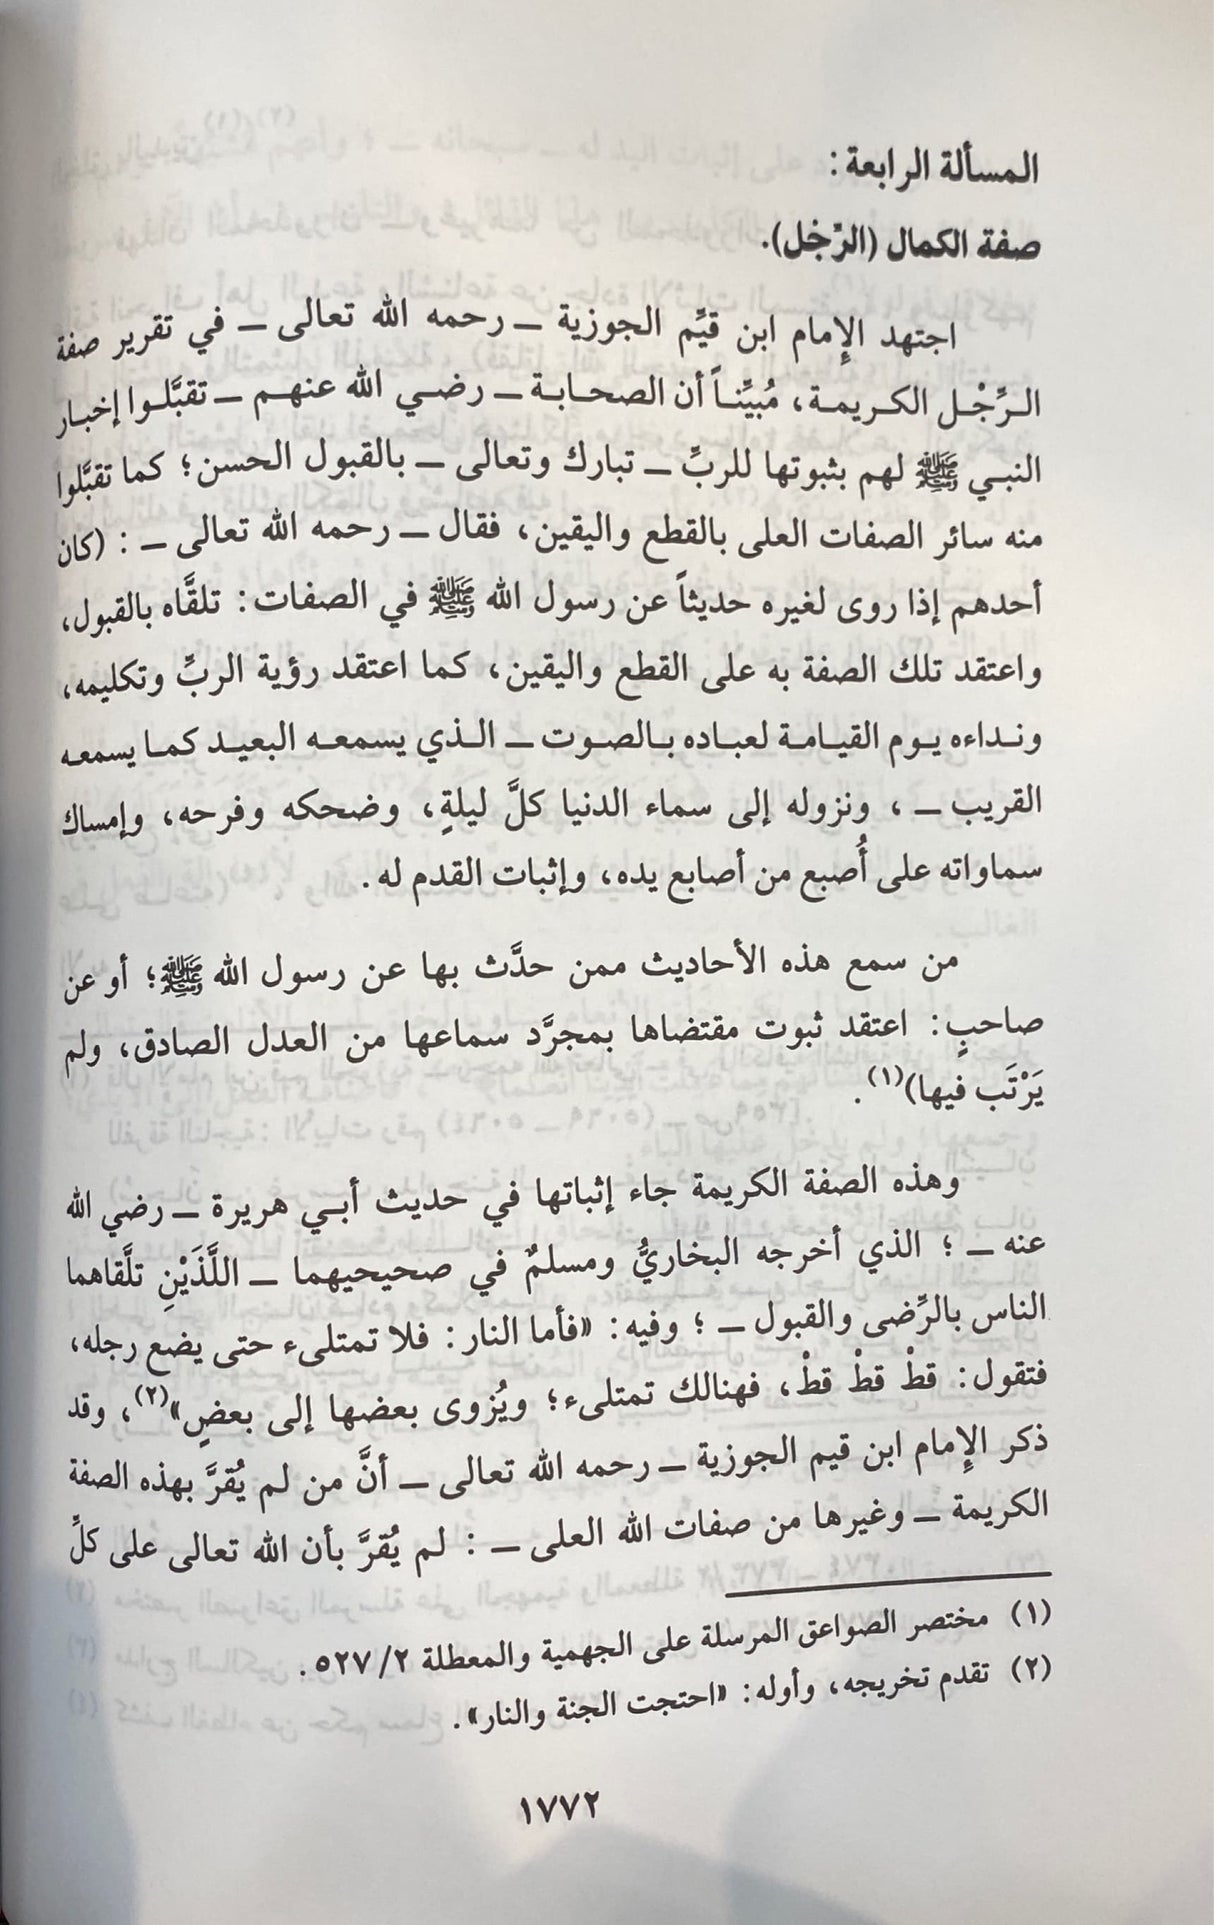 جهود الامام ابن القيم الجوزية في تقرير توحيد الاسماء و الصفات   Juhood Imam Ibnul Qayim Al Jawzi Fi Tarir Tawhidil Asma Was Sifaat (3 Volume Set)